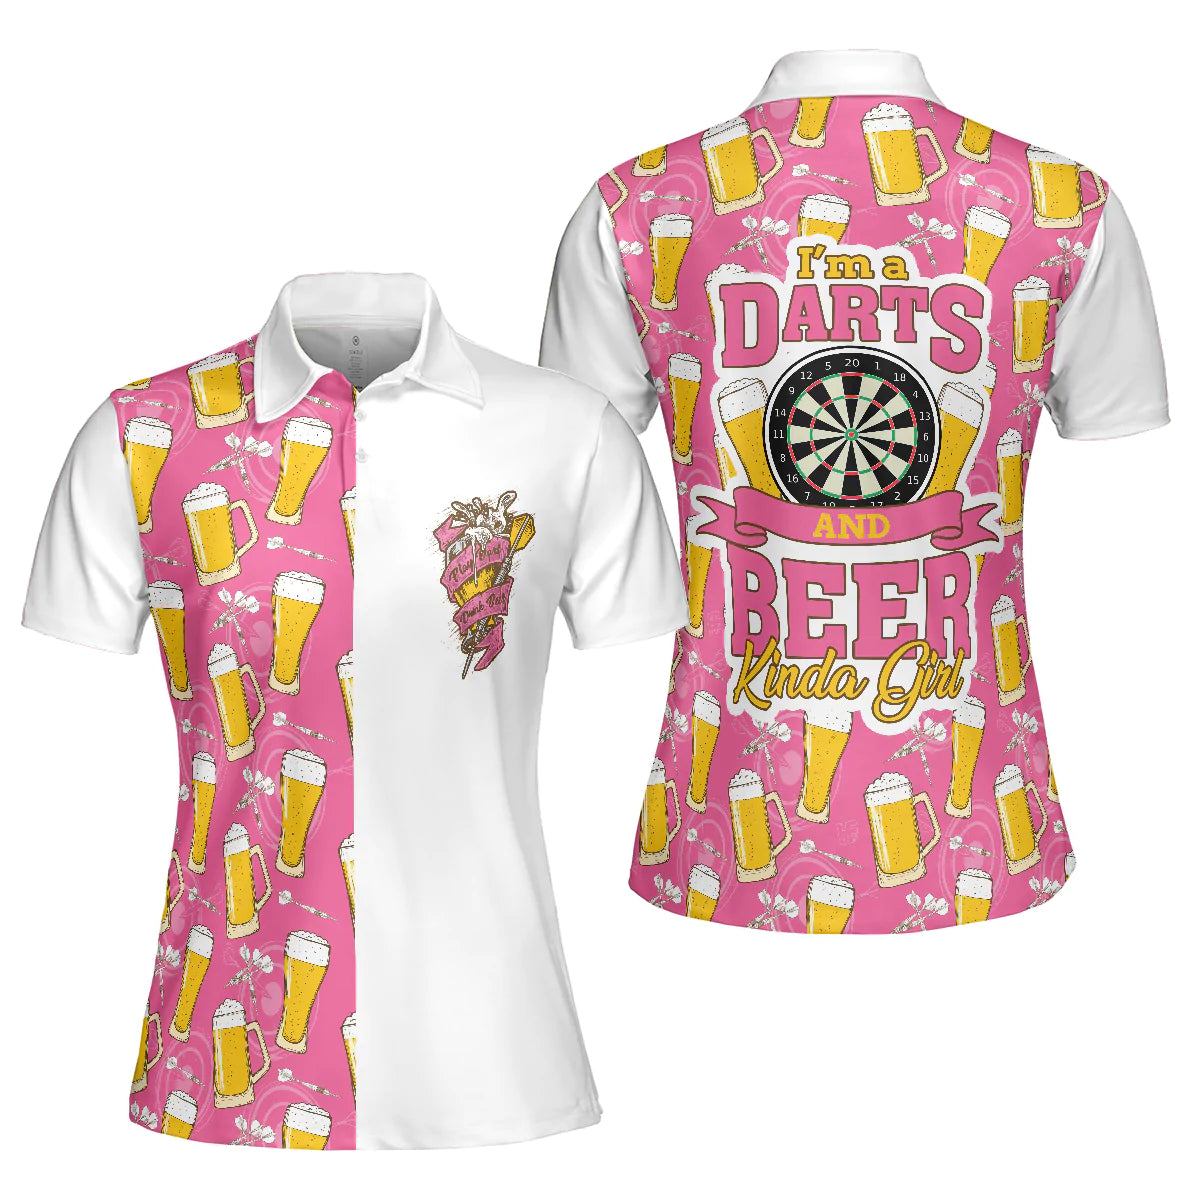 Darts And Beer Women Polo Shirt/ I''m A Darts And Beer Kinda Girl Short Sleeve Shirt/ Funny Ladies'' Darts Shirt/ Darts Gift For Women